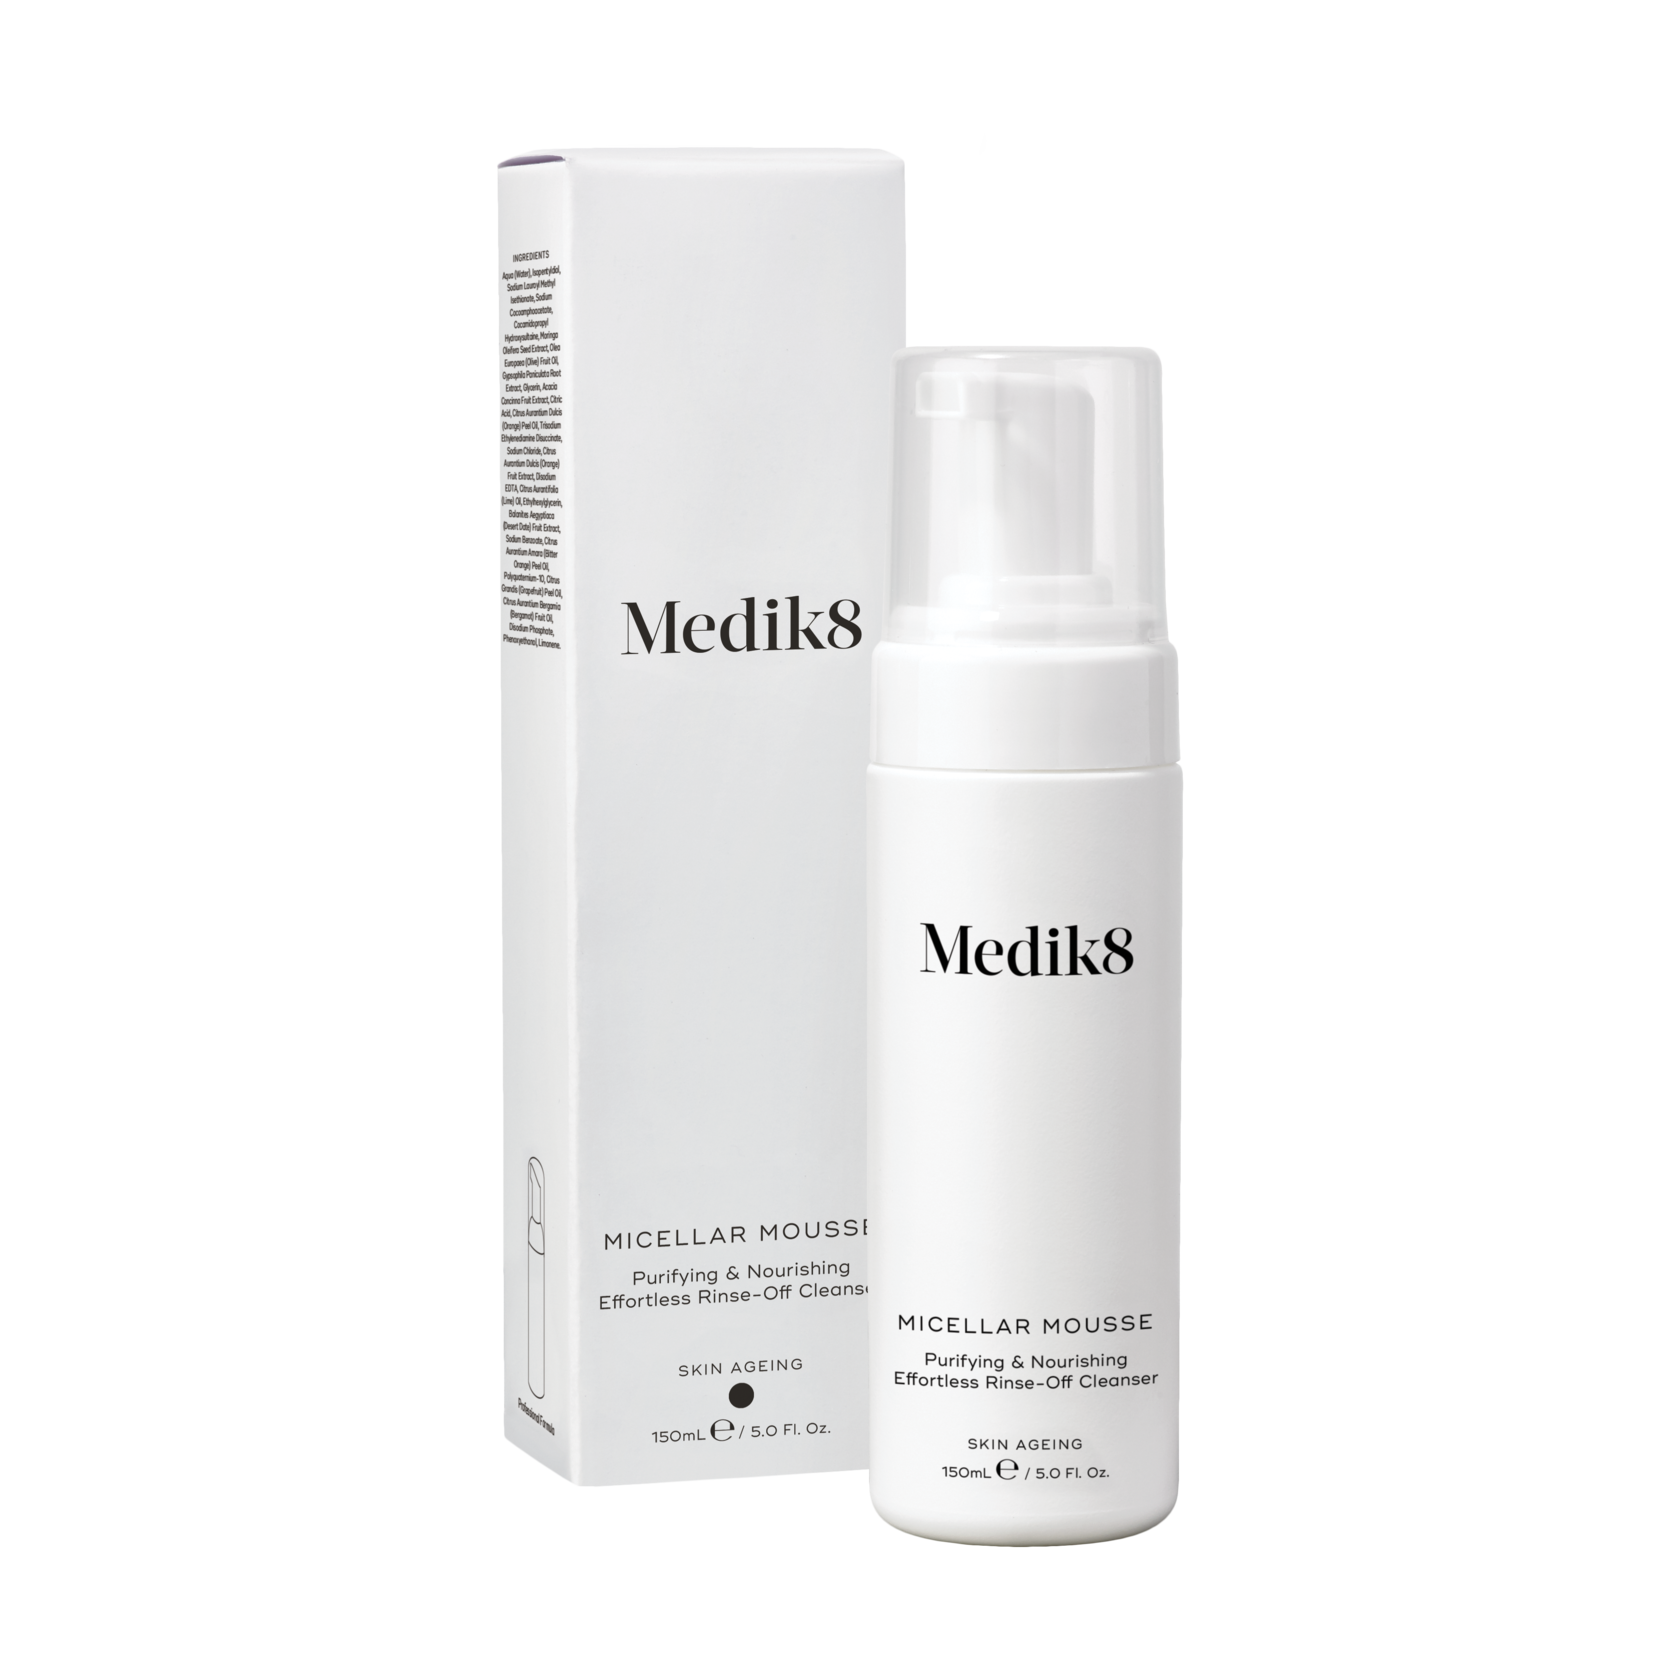 Питательный мусс для очищения кожи Micellar Mousse Medik8, 150мл